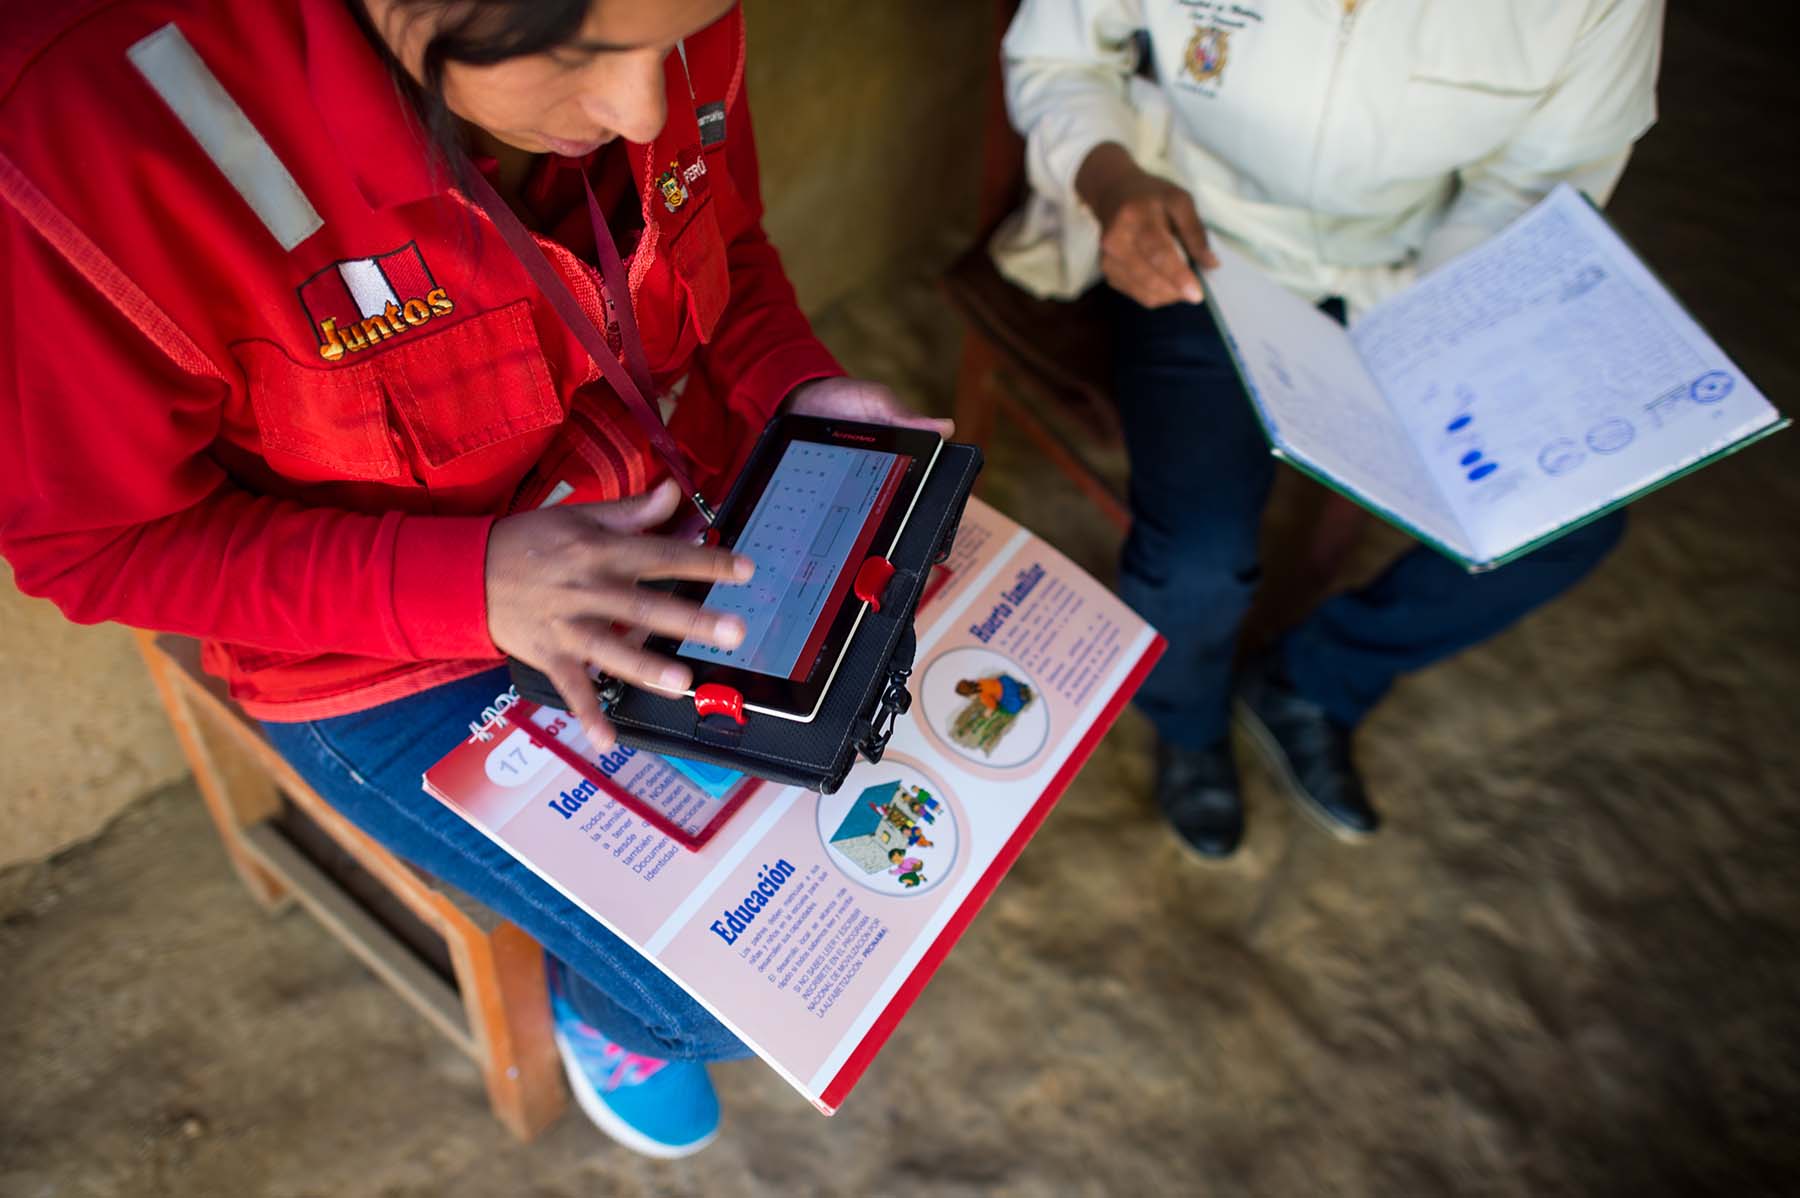 صورة تُظهر موظفي الرعاية الصحية وهم يستخدمون حاسوباً لوحياً لجمع بيانات الصحة والنمو أثناء التحدث إلى أم بخصوص صحة ابنها، وذلك خلال زيارة فحص صحي. (سوغوبامبا، بيرو)